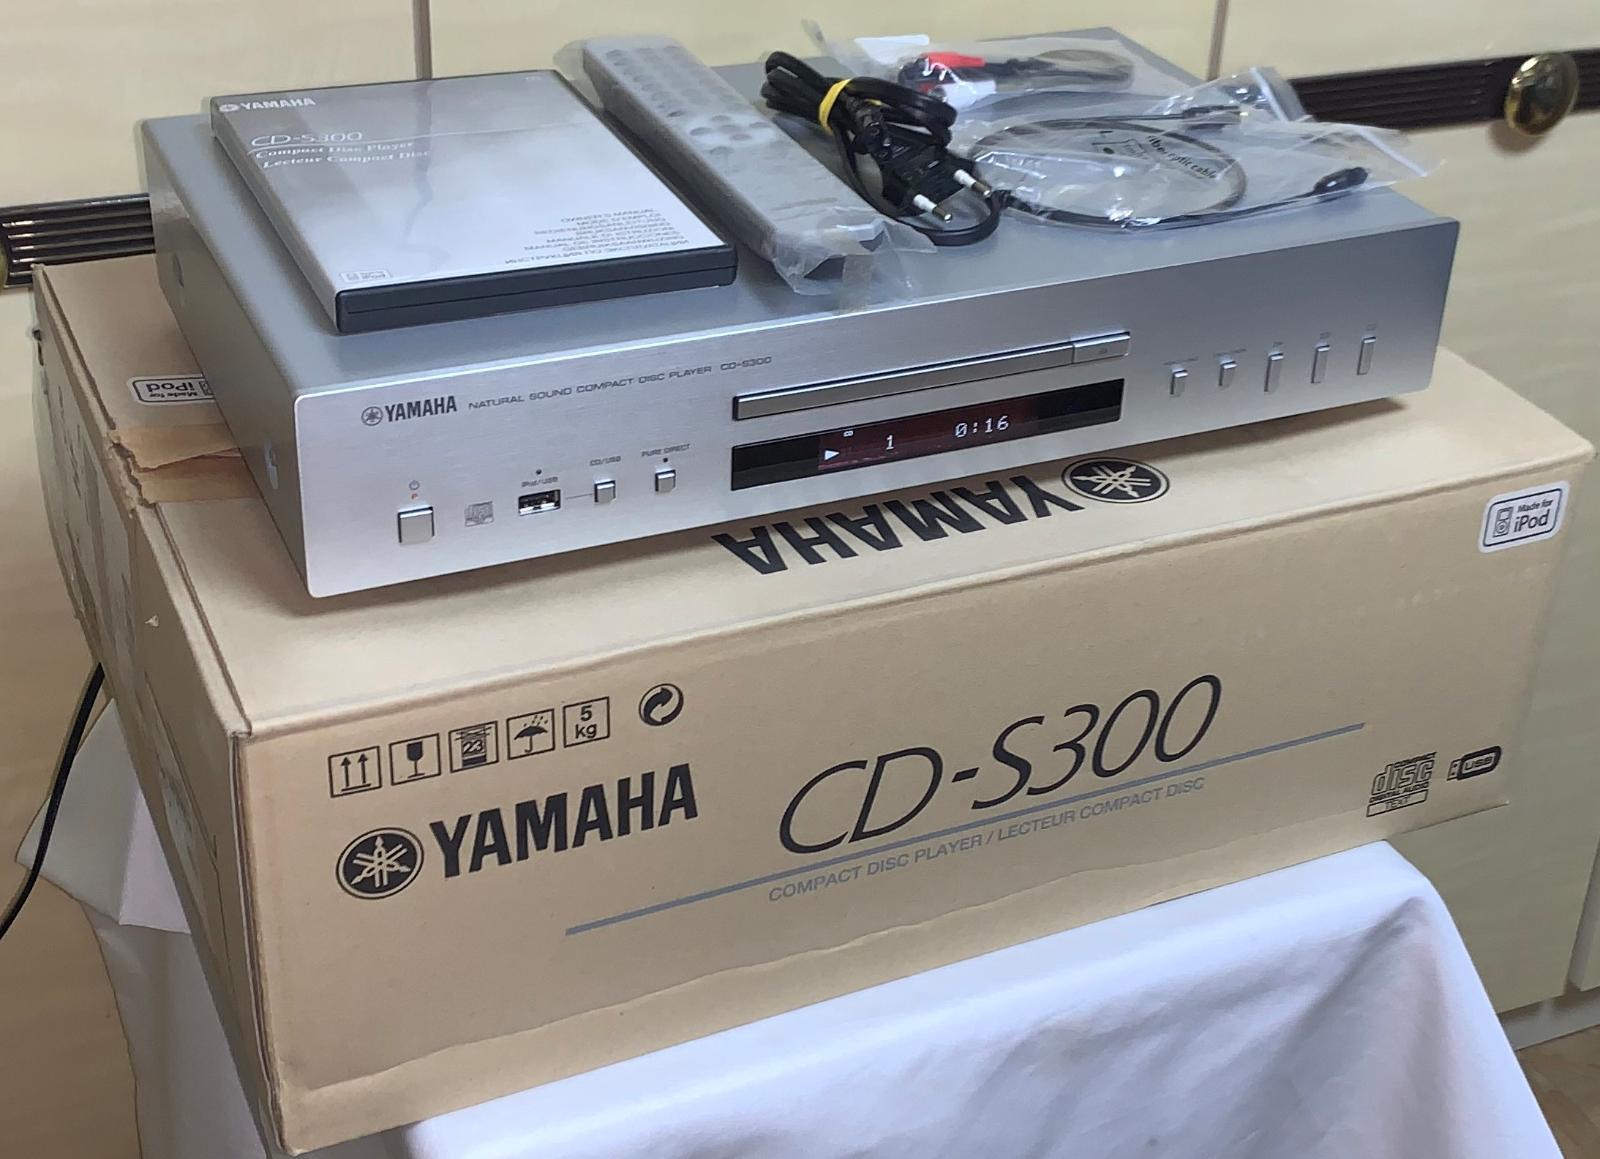 Used Yamaha CD-S300 CD players for Sale | HifiShark.com